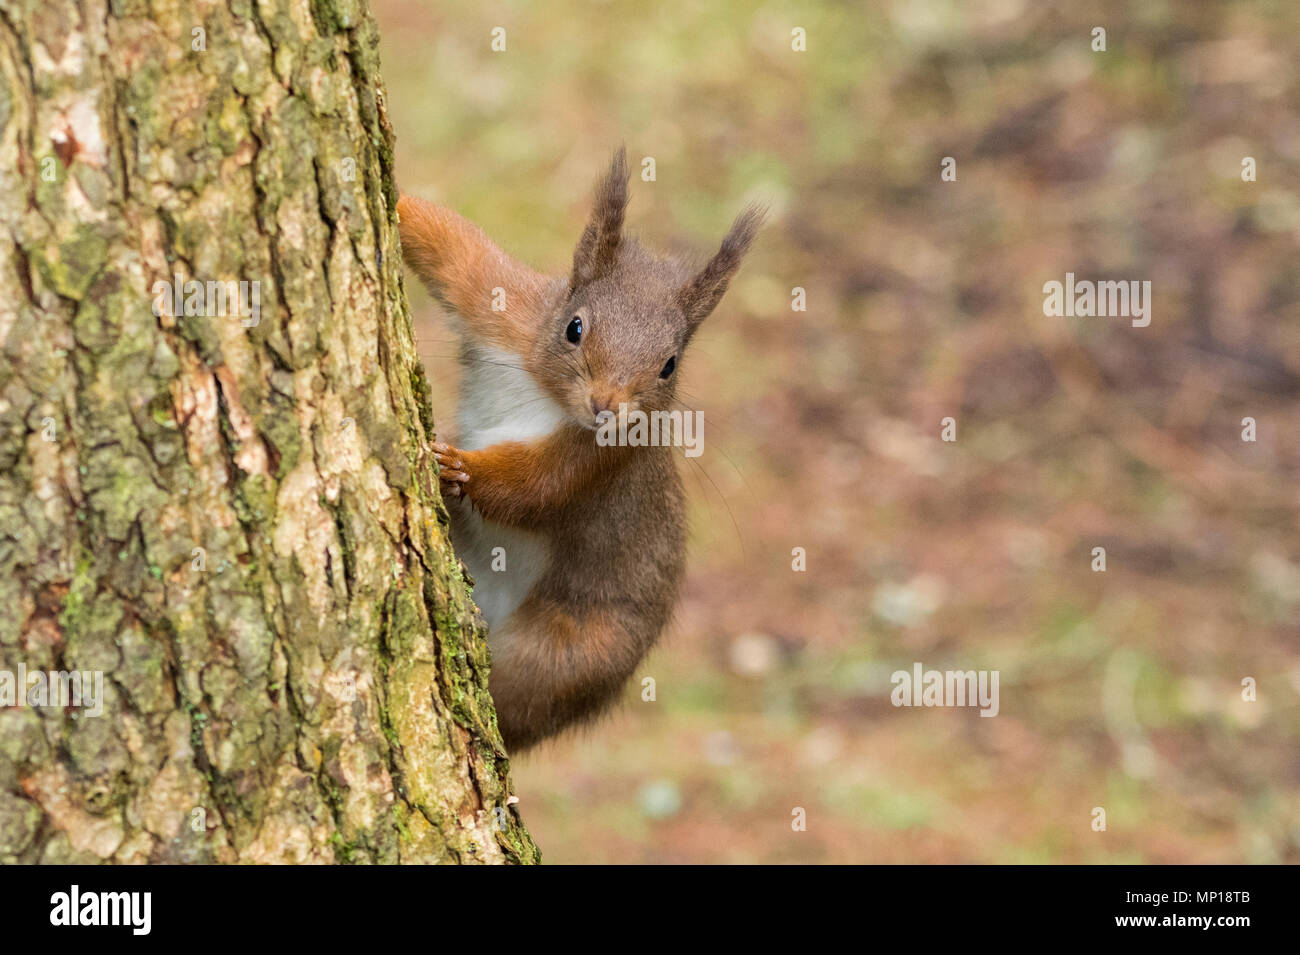 Seul, mignon écureuil rouge accroché à tronc de l'arbre et effrontément peeping round - Snaizeholme Écureuil rouge Trail, près de Hawes, Yorkshire, Angleterre, Royaume-Uni. Banque D'Images